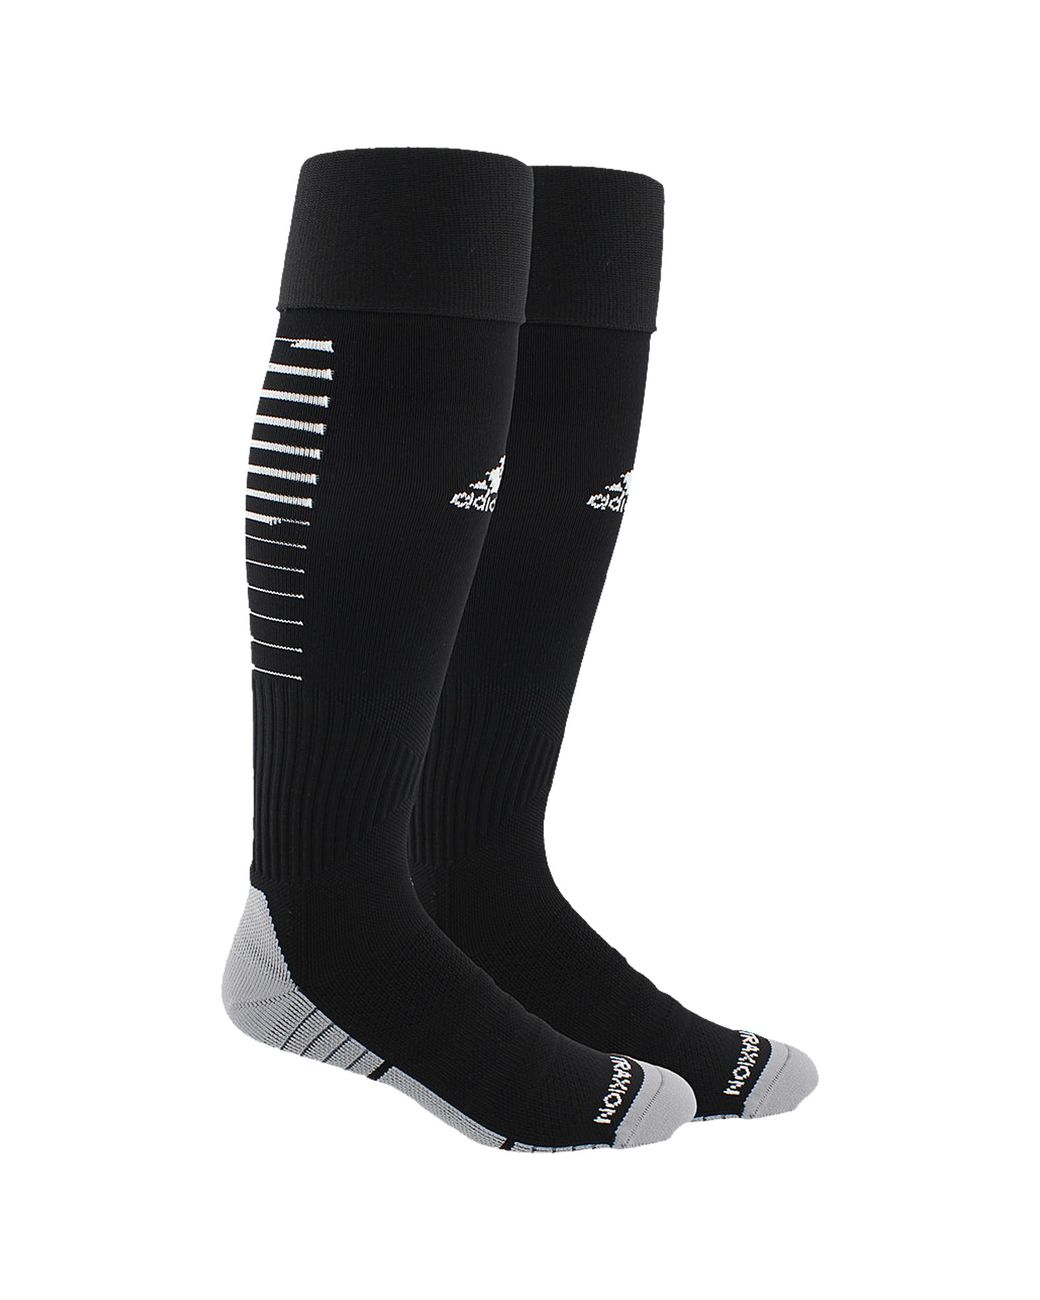 adidas Team Speed Ii Soccer Sock Otc in Black for Men - Lyst